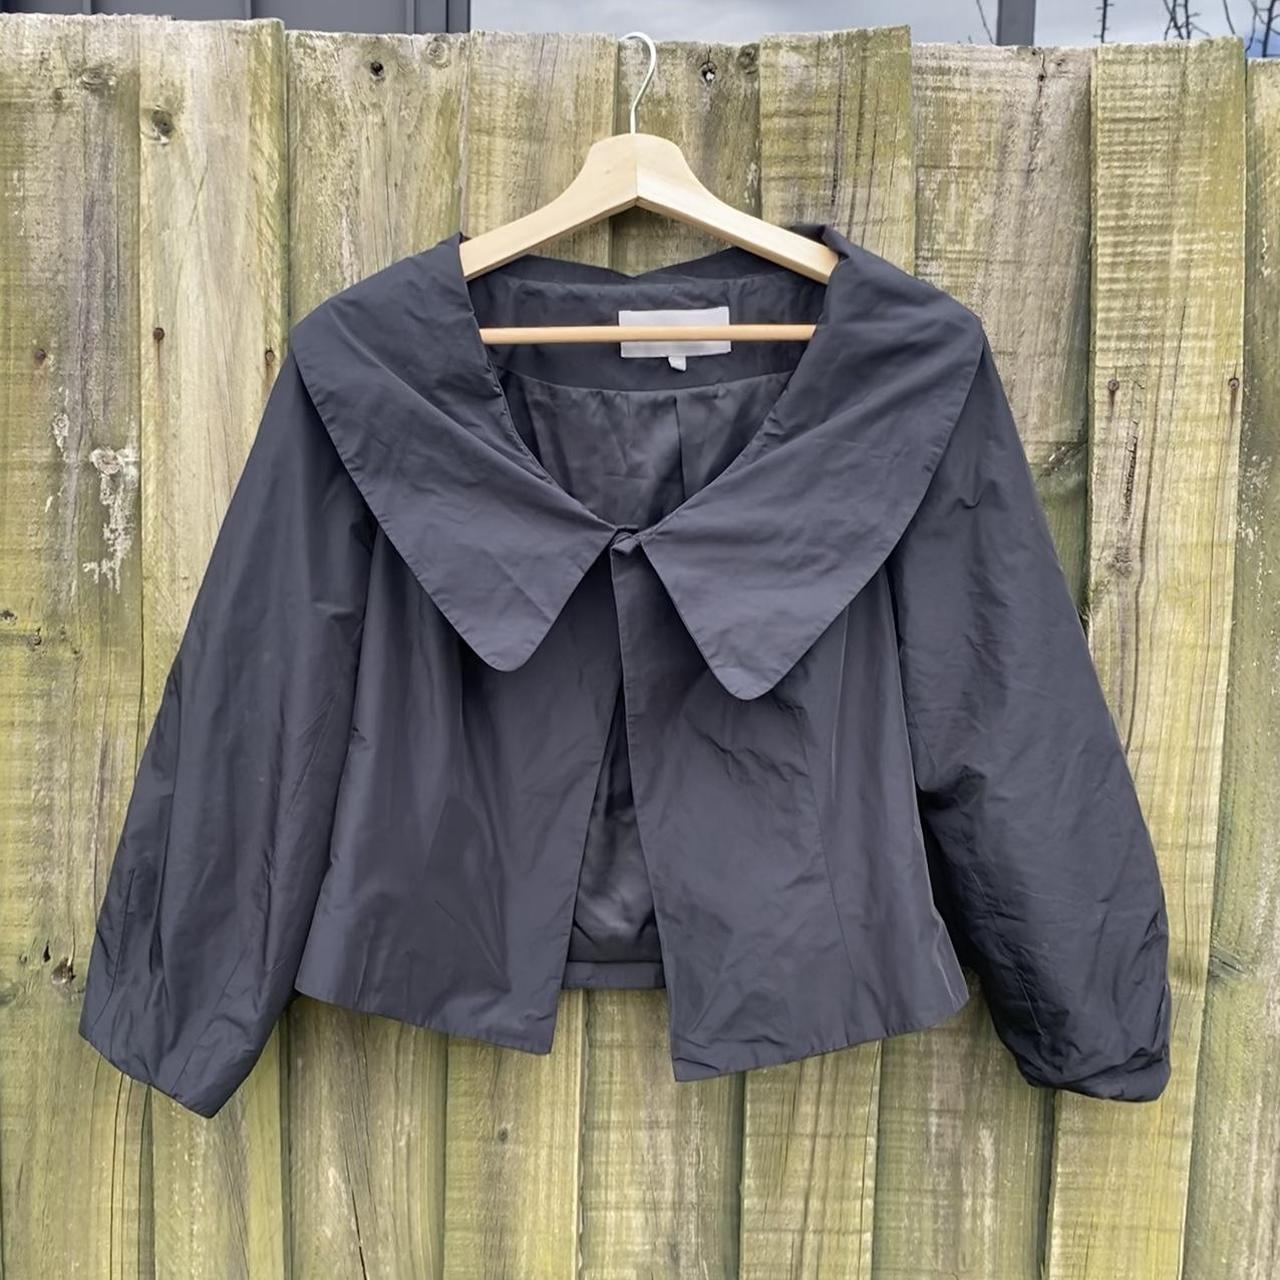 Cutest top/jacket in waterproof material! Seen on... - Depop